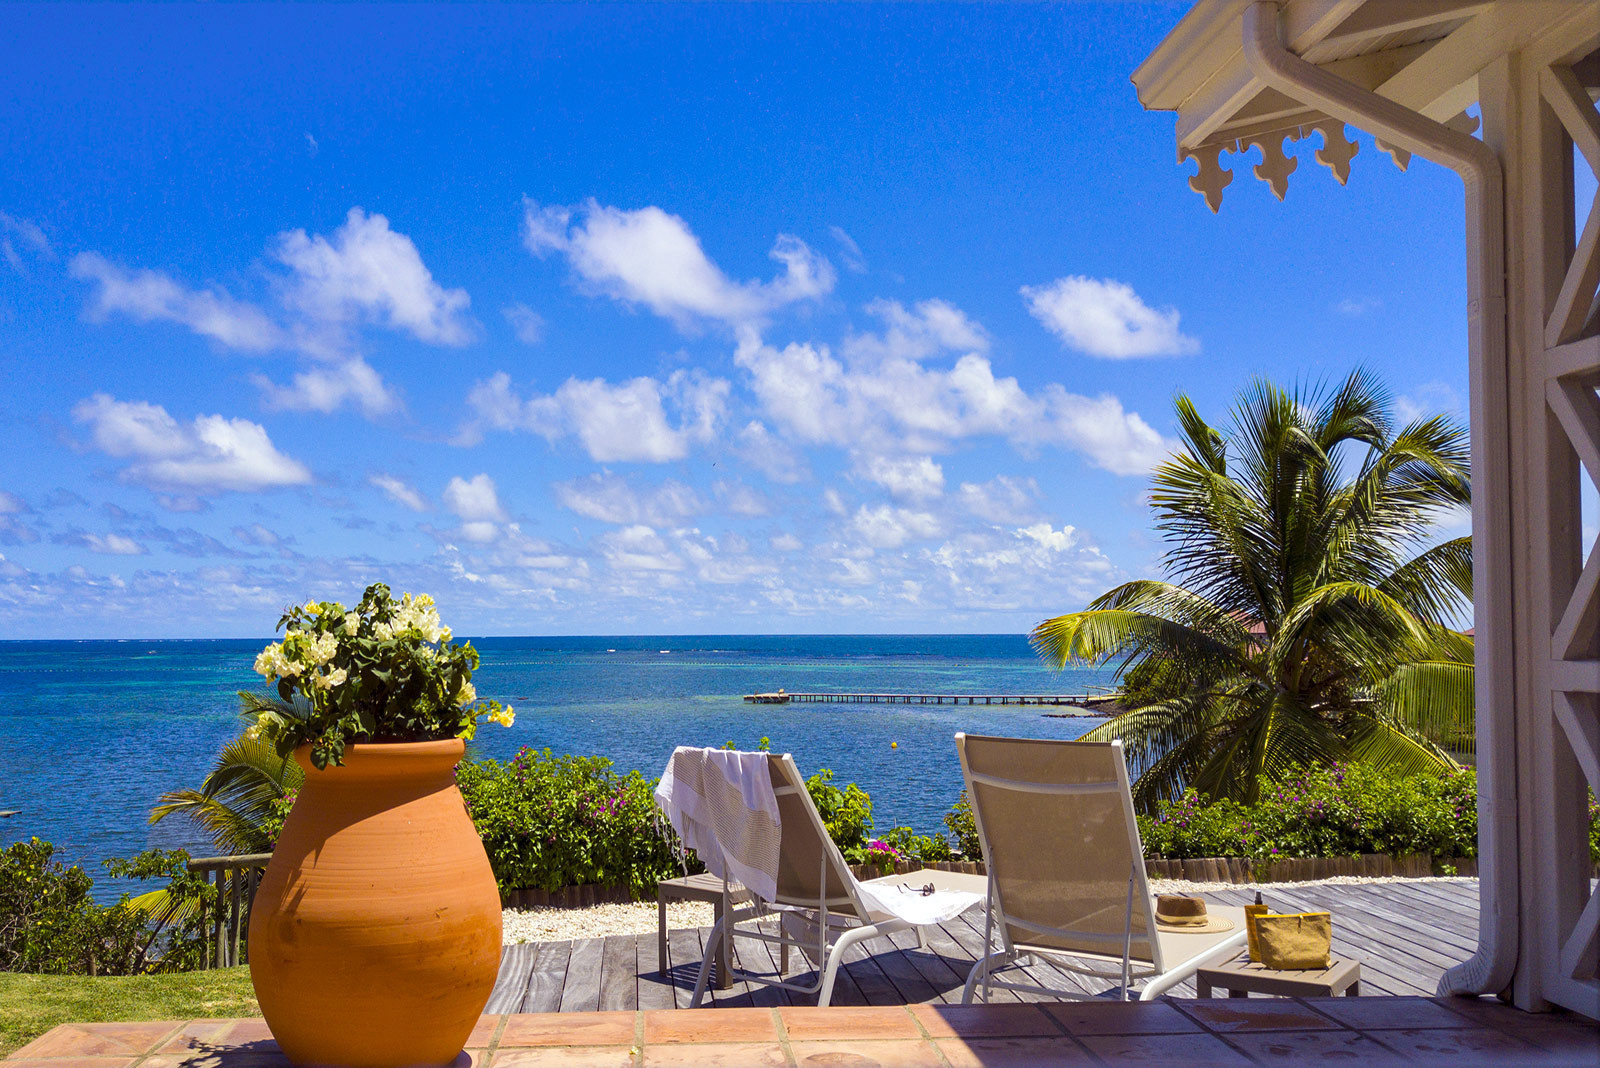 Cette belle villa confortable, vous attend pour vos vacances de rêve au coeur de la Martinique